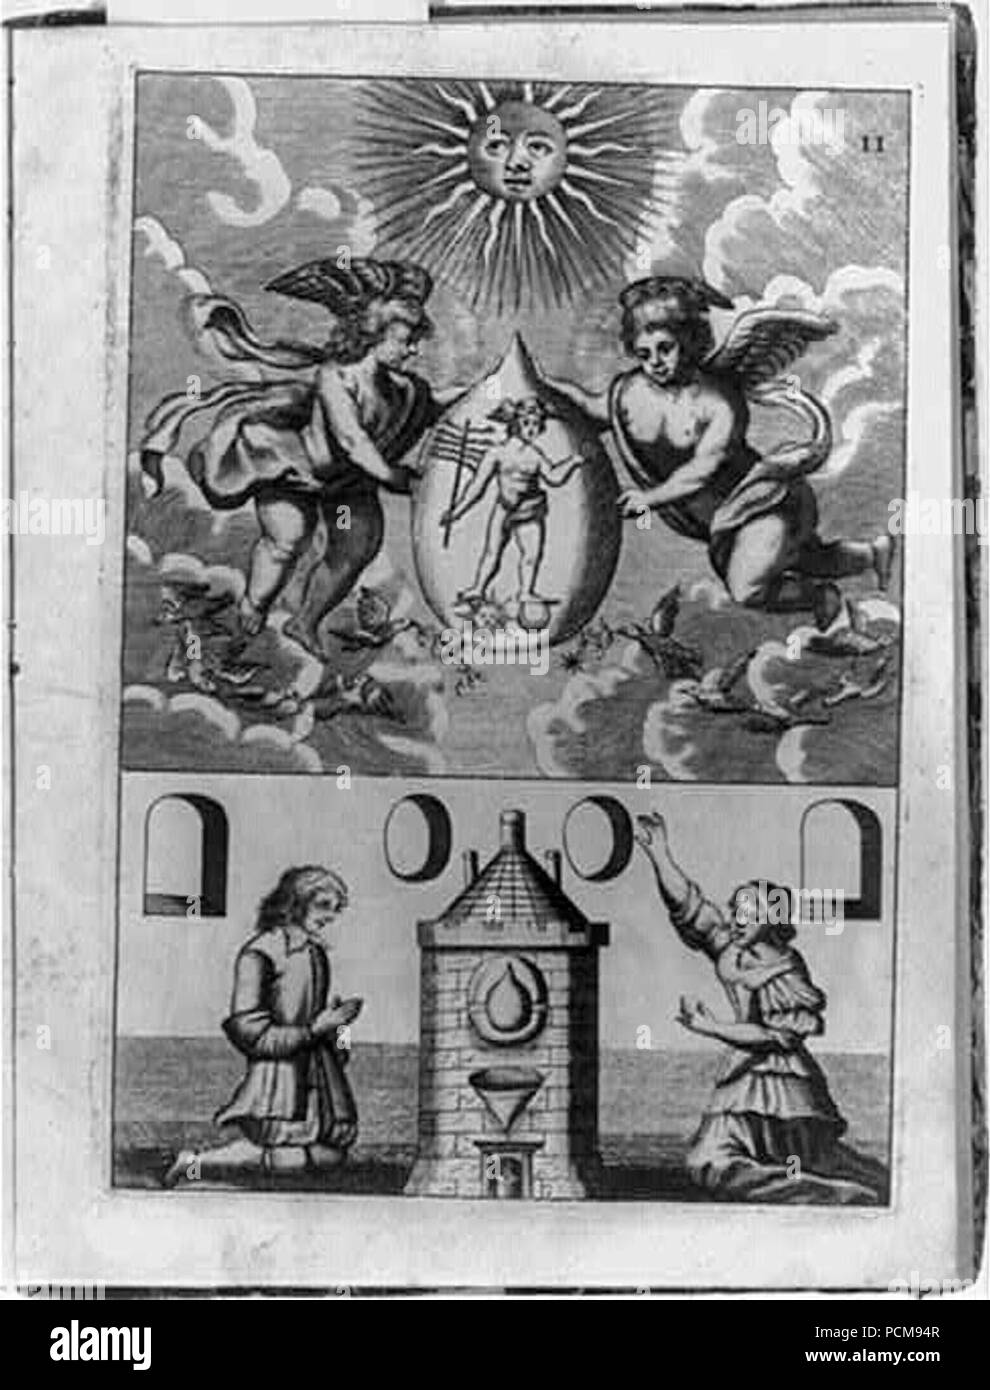 Scène alchimique montrant deux putti holding pierre philosophale contenant de l'image d'Hermès, ci-dessous qui sont un homme et une femme à genoux devant four où la transmutation n'est d'avoir lieu Banque D'Images